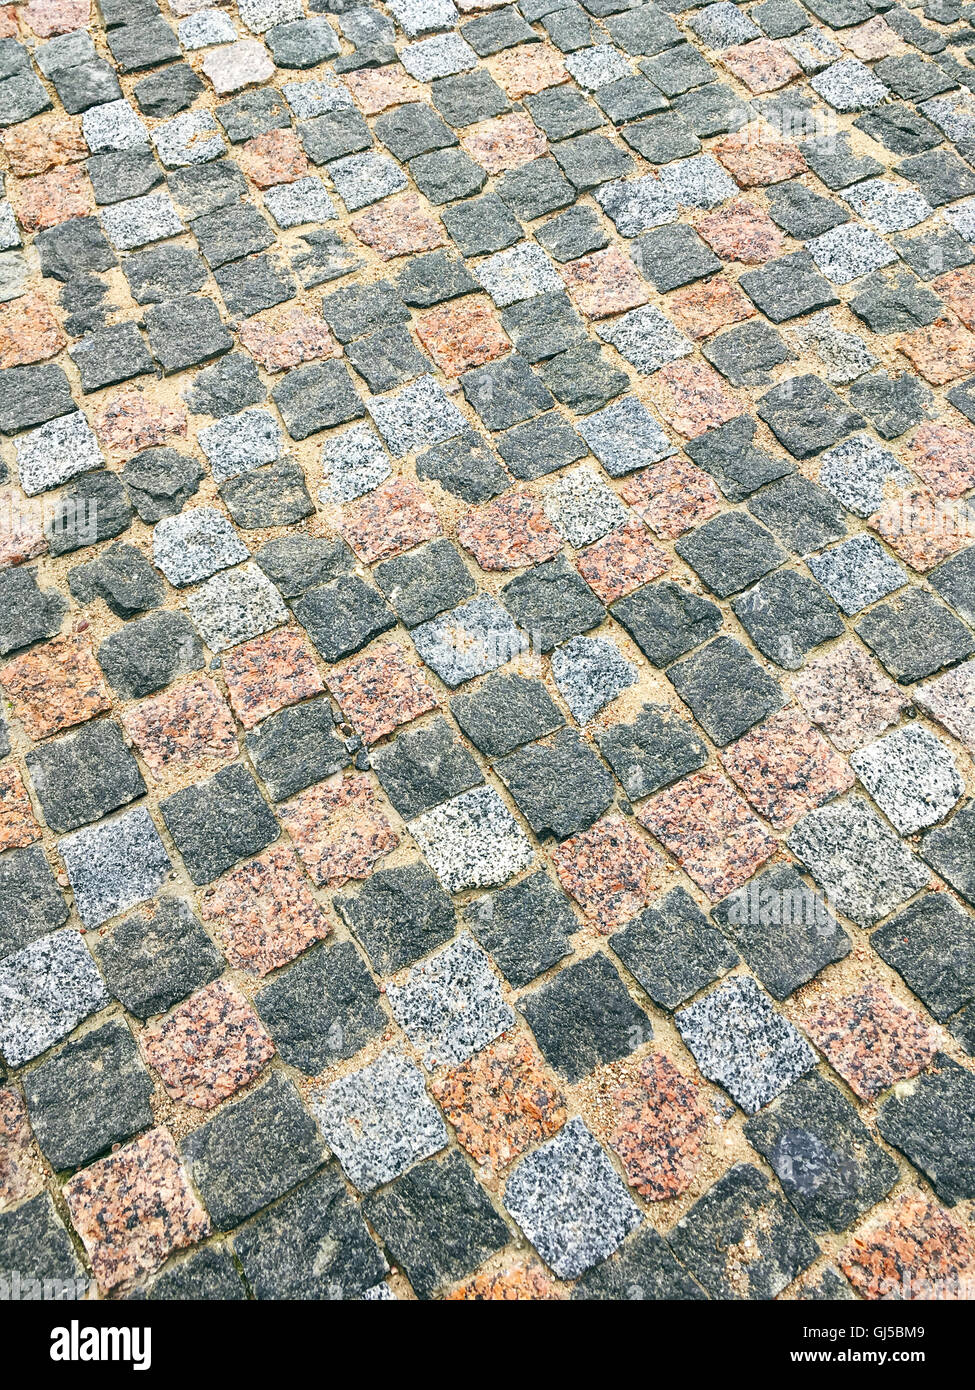 perspektivische Ansicht des farbigen Granit Steinen städtischen Bürgersteig Stockfoto